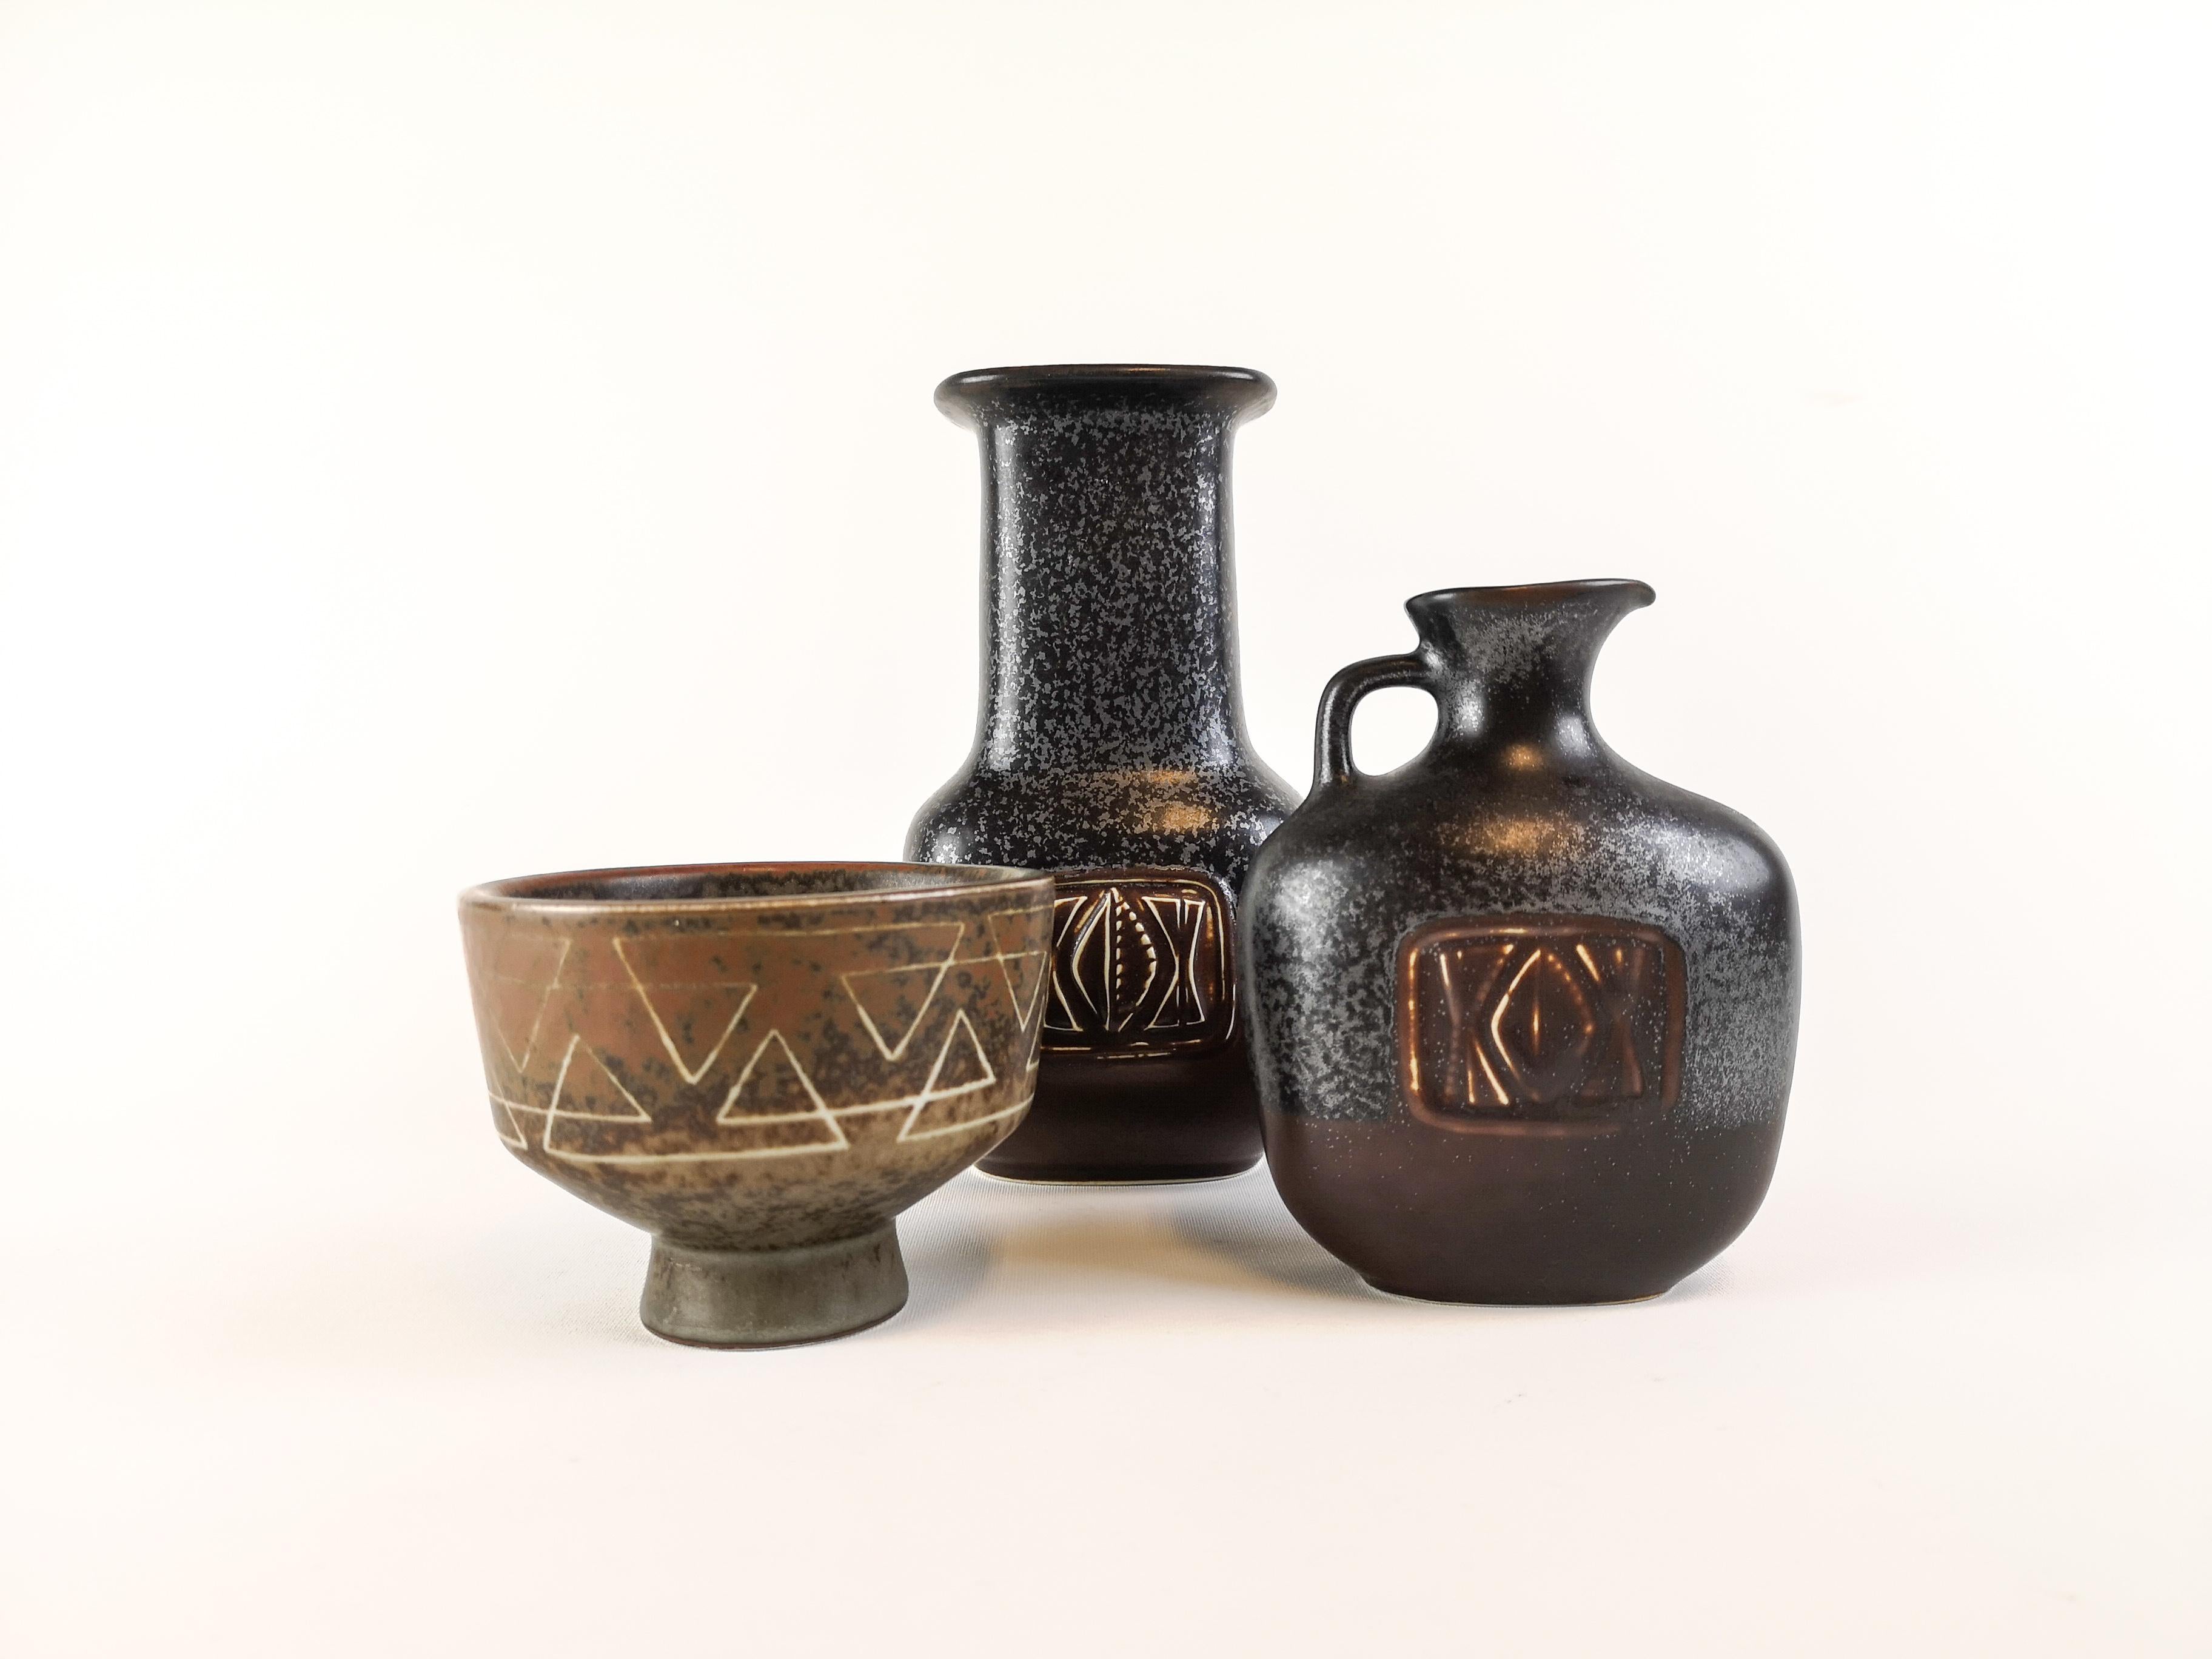 Drei wunderschöne Stücke, die in den 1950er Jahren in der Fabrik Rörstrand in Schweden hergestellt und von Gunnar Nylund entworfen wurden

Die Vasen passen zur Schale und verleihen ihr ein schönes antikes Aussehen. Die Vase und die Schale sind